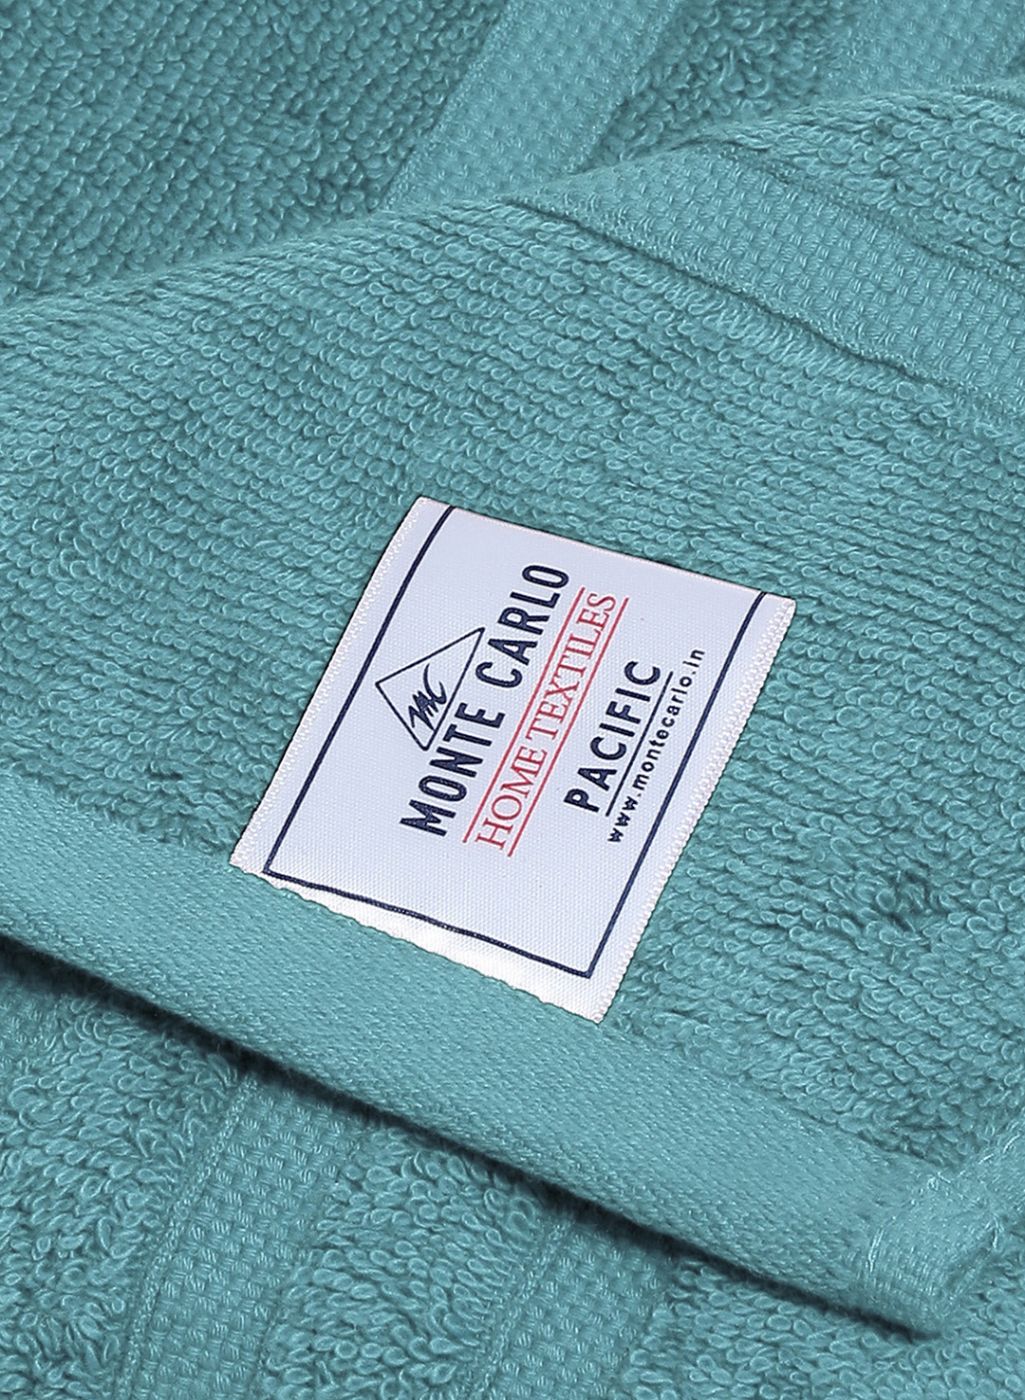 Teal Blue Cotton 525 GSM Bath Towel